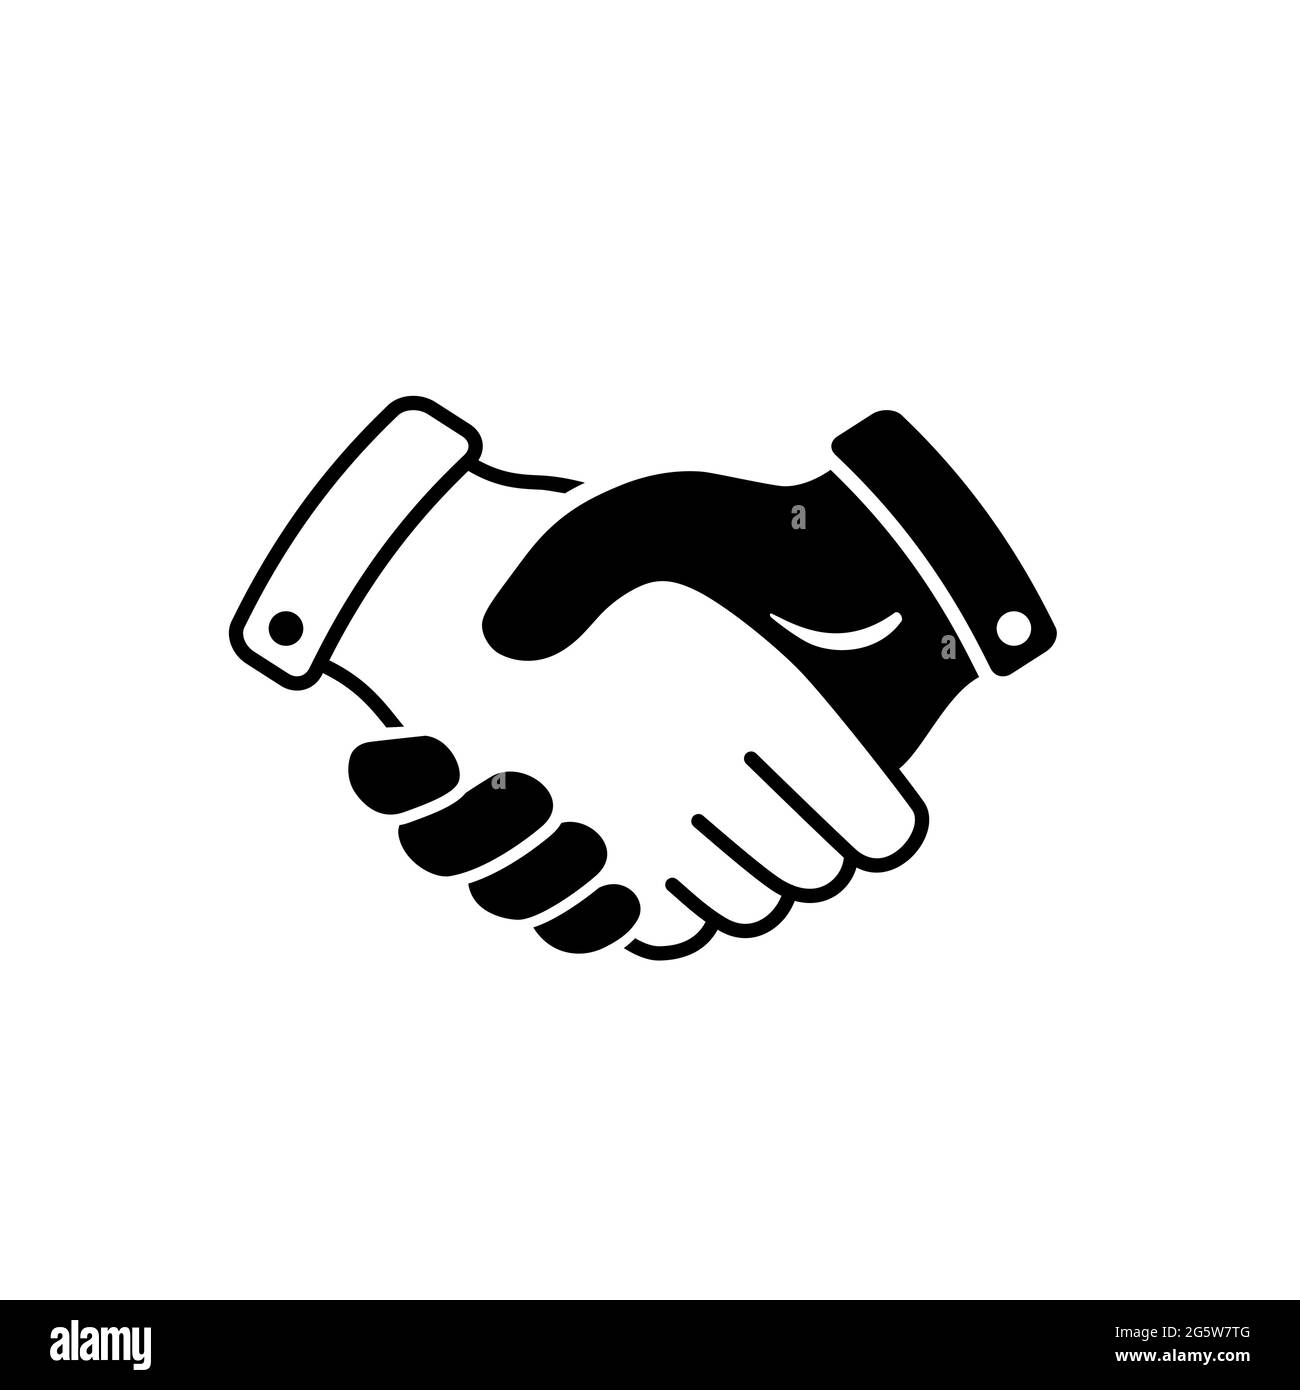 Vektor Handshake Linie Kunst Symbol, Zeichen. Geschäftsvertrag, Vertragssymbol. Linienzeichnung, Schwarz-Weiß-Illustration. Stock Vektor